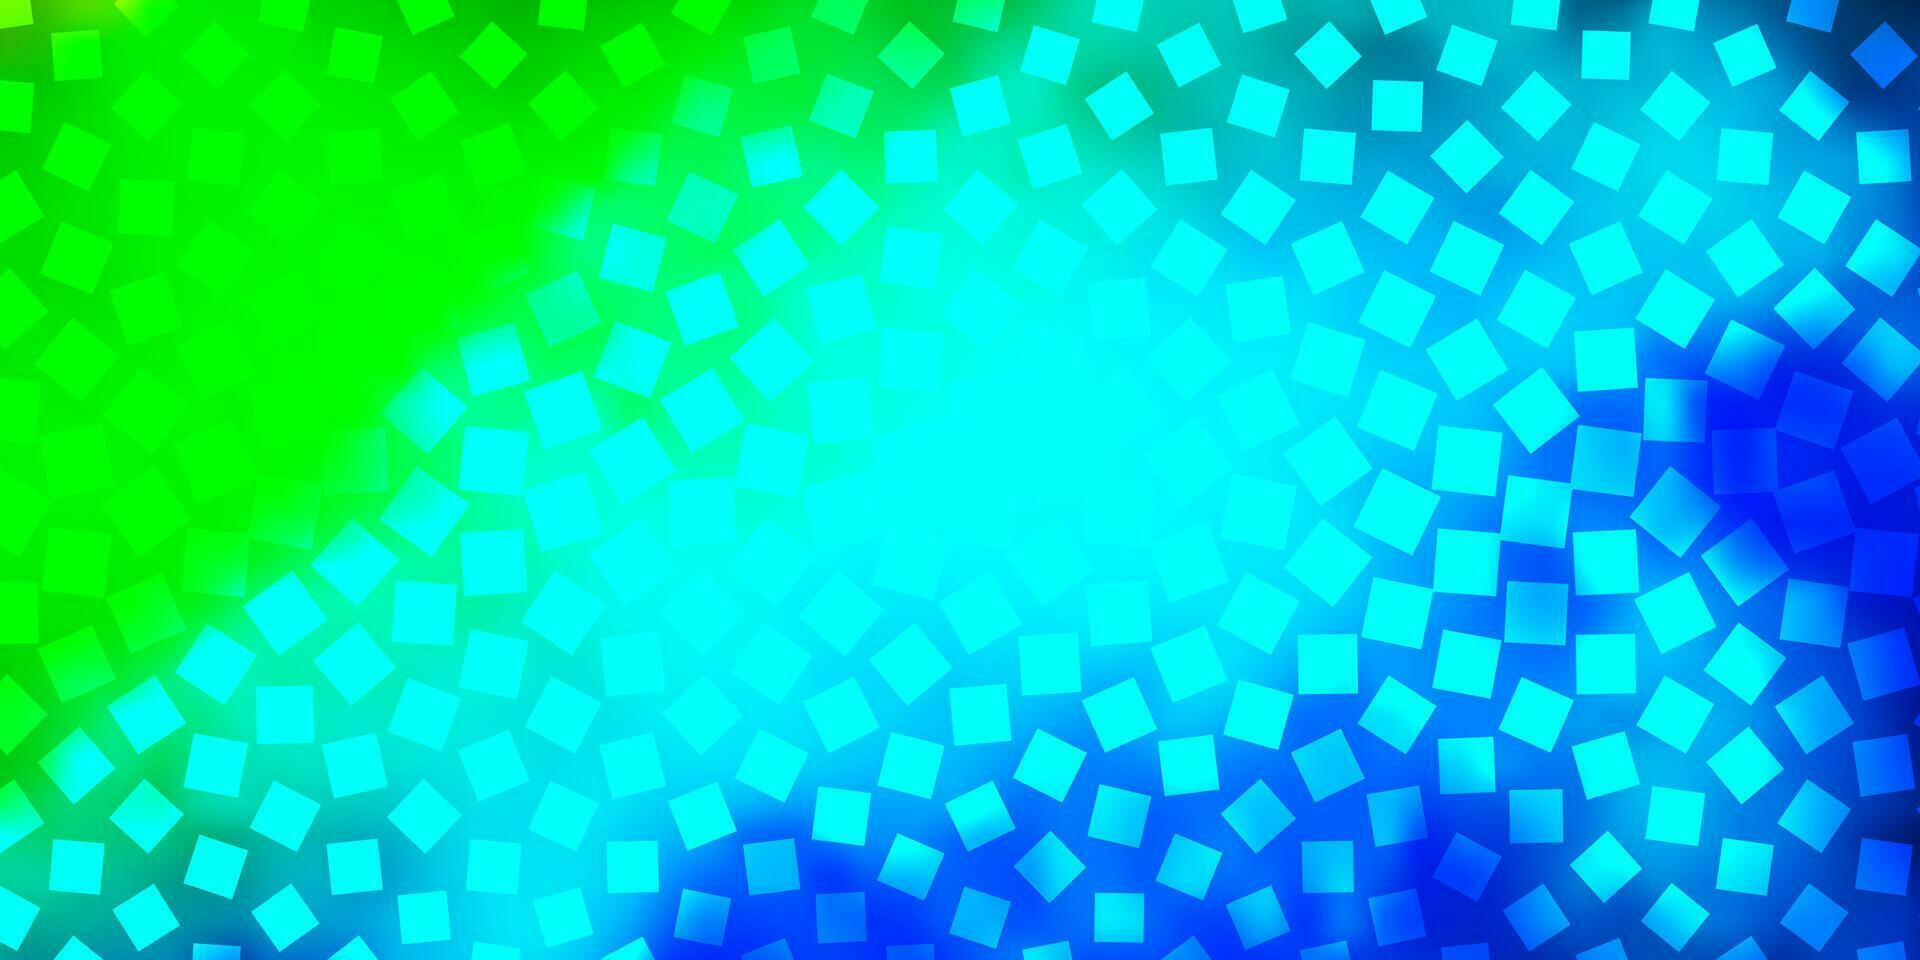 hellblaue, grüne Vektortextur im rechteckigen Stil. vektor